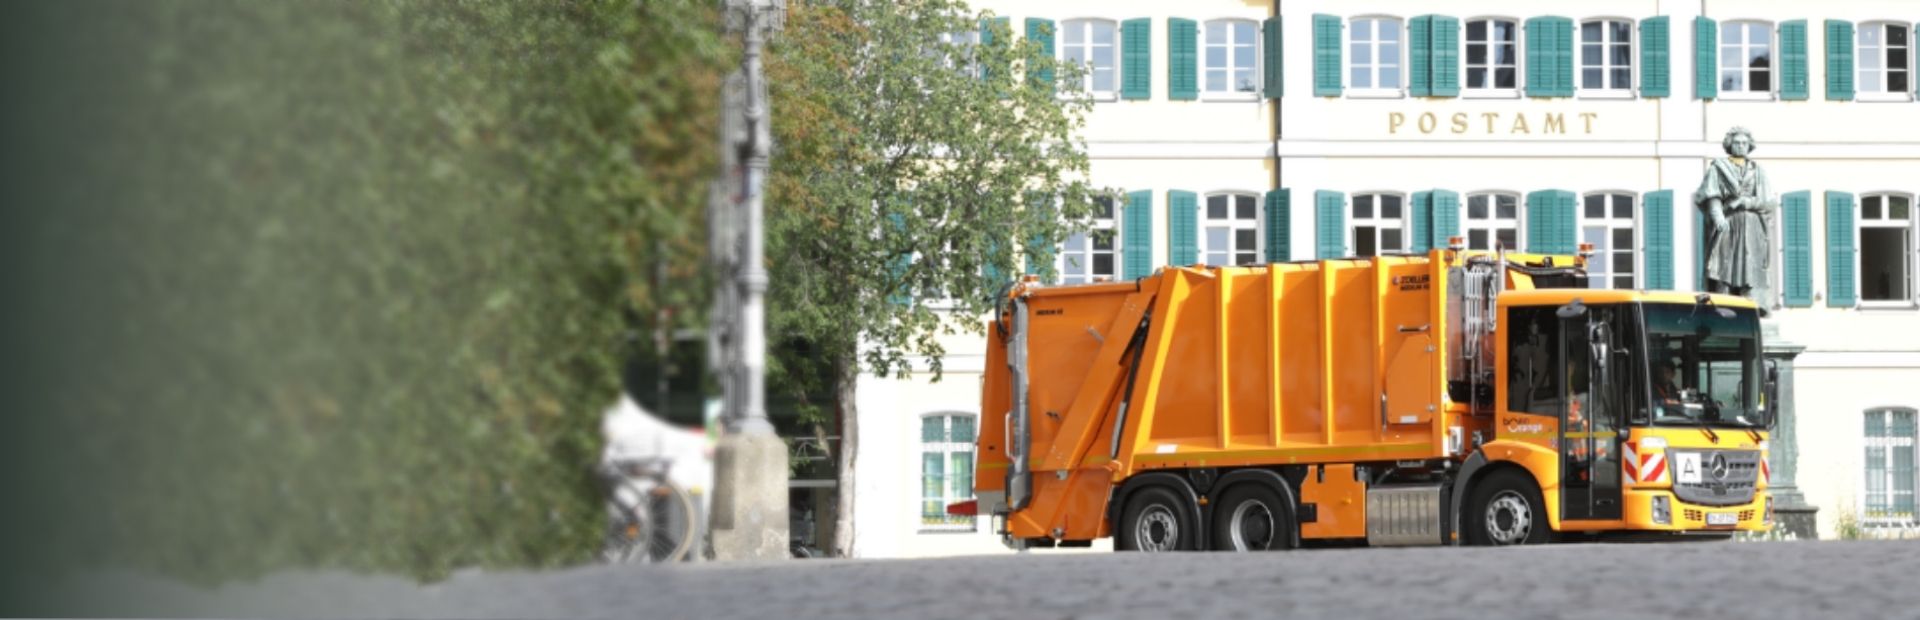 Abfallsammelfahrzeug vor der Alten Post mit Beethovendenkmal in Bonn